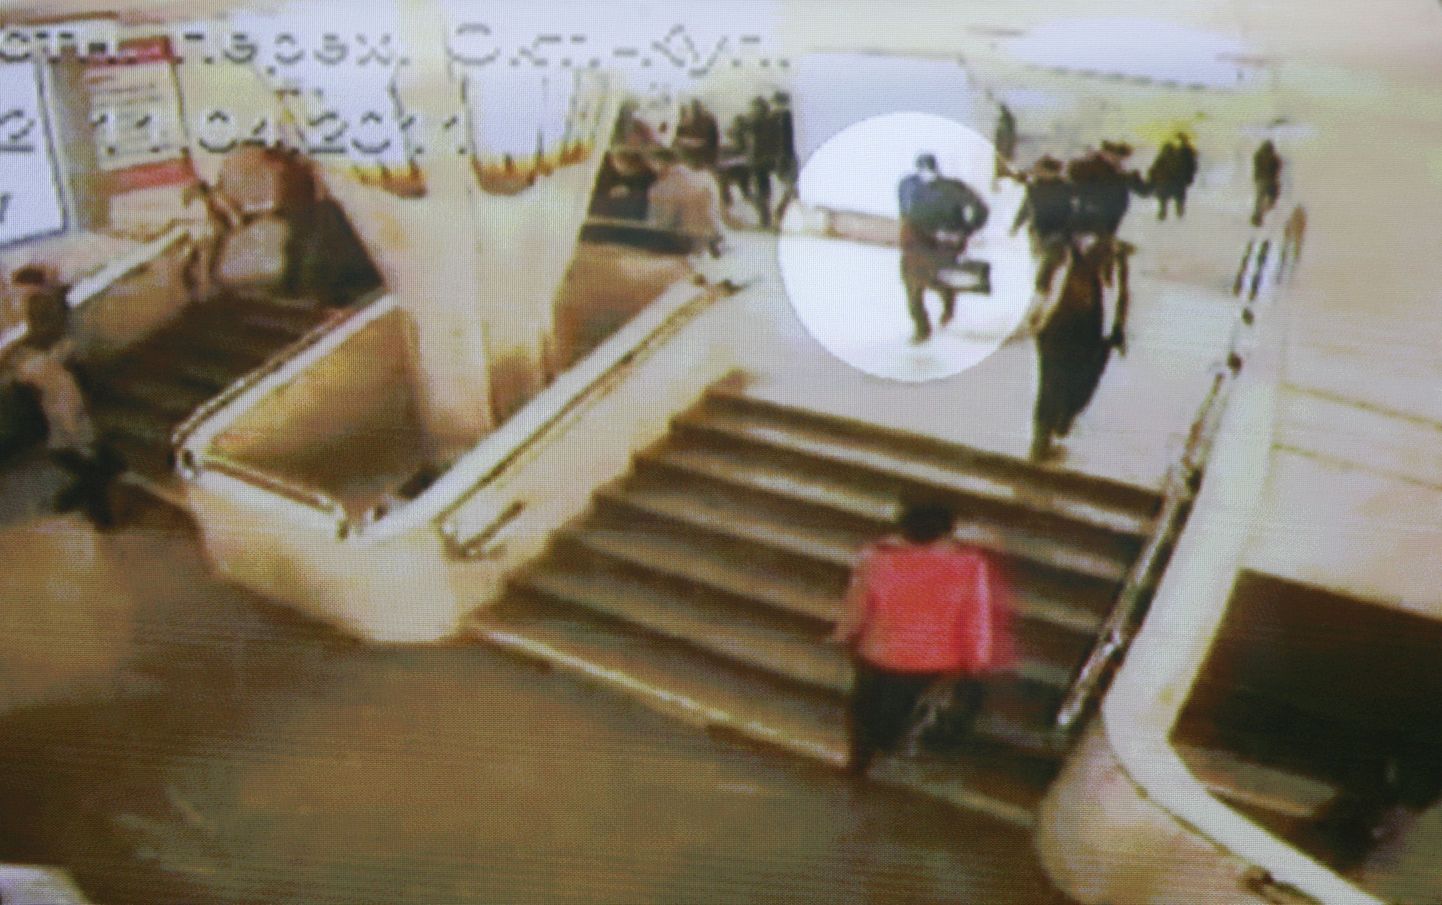 Oktjabrskaja metroojaama turvakaamera ülevõttelt näeb musta kotti kandvat meest, kes uurijate väitel on plahvatuse täideviija.